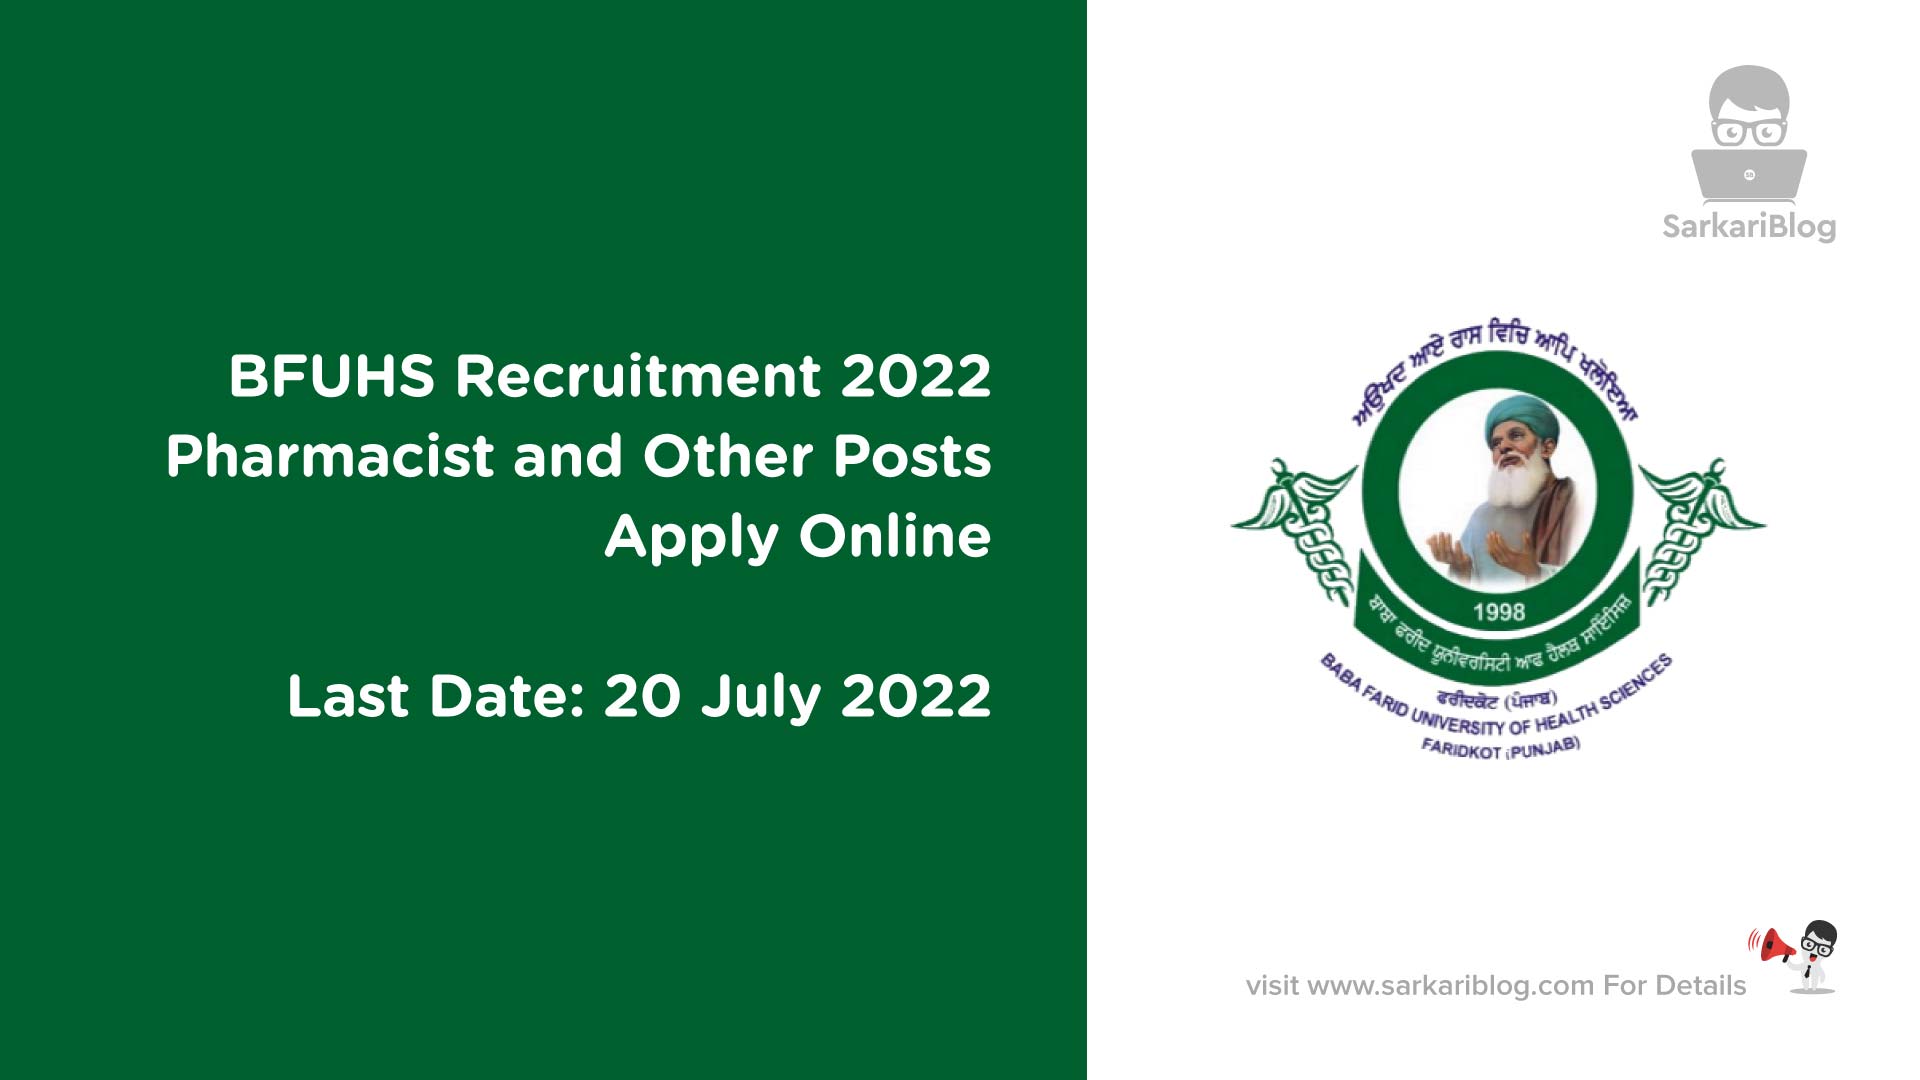 BFUHS Recruitment 2022